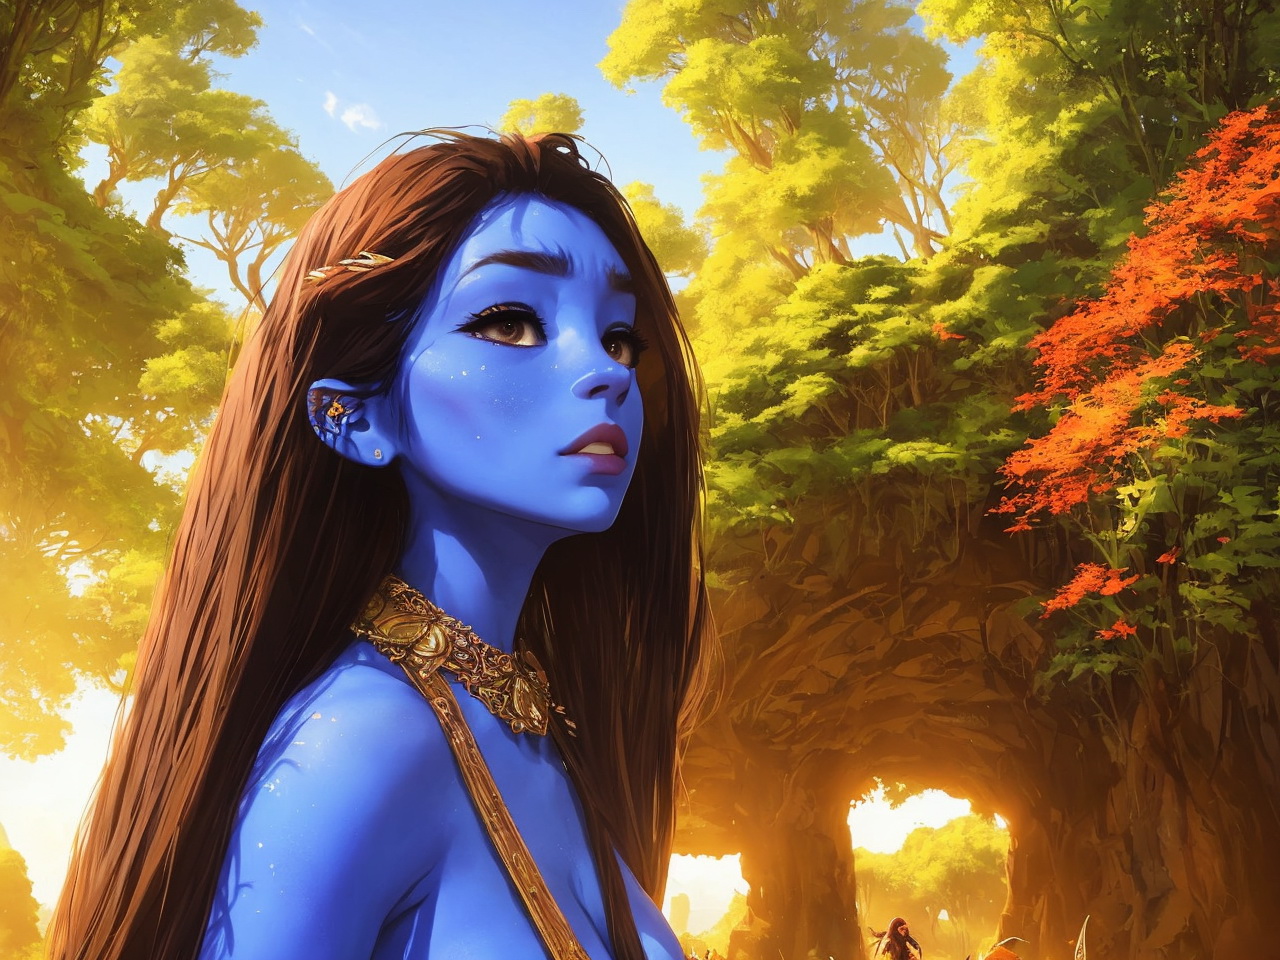 Nếu bạn yêu thích bộ phim Avatar, hãy đến và chiêm ngưỡng hình ảnh Na\'vi đầy huyền bí tại đây. Với công nghệ 3D tiên tiến, bạn sẽ được trải nghiệm như đang bước vào thế giới Pandora chưa từng thấy.